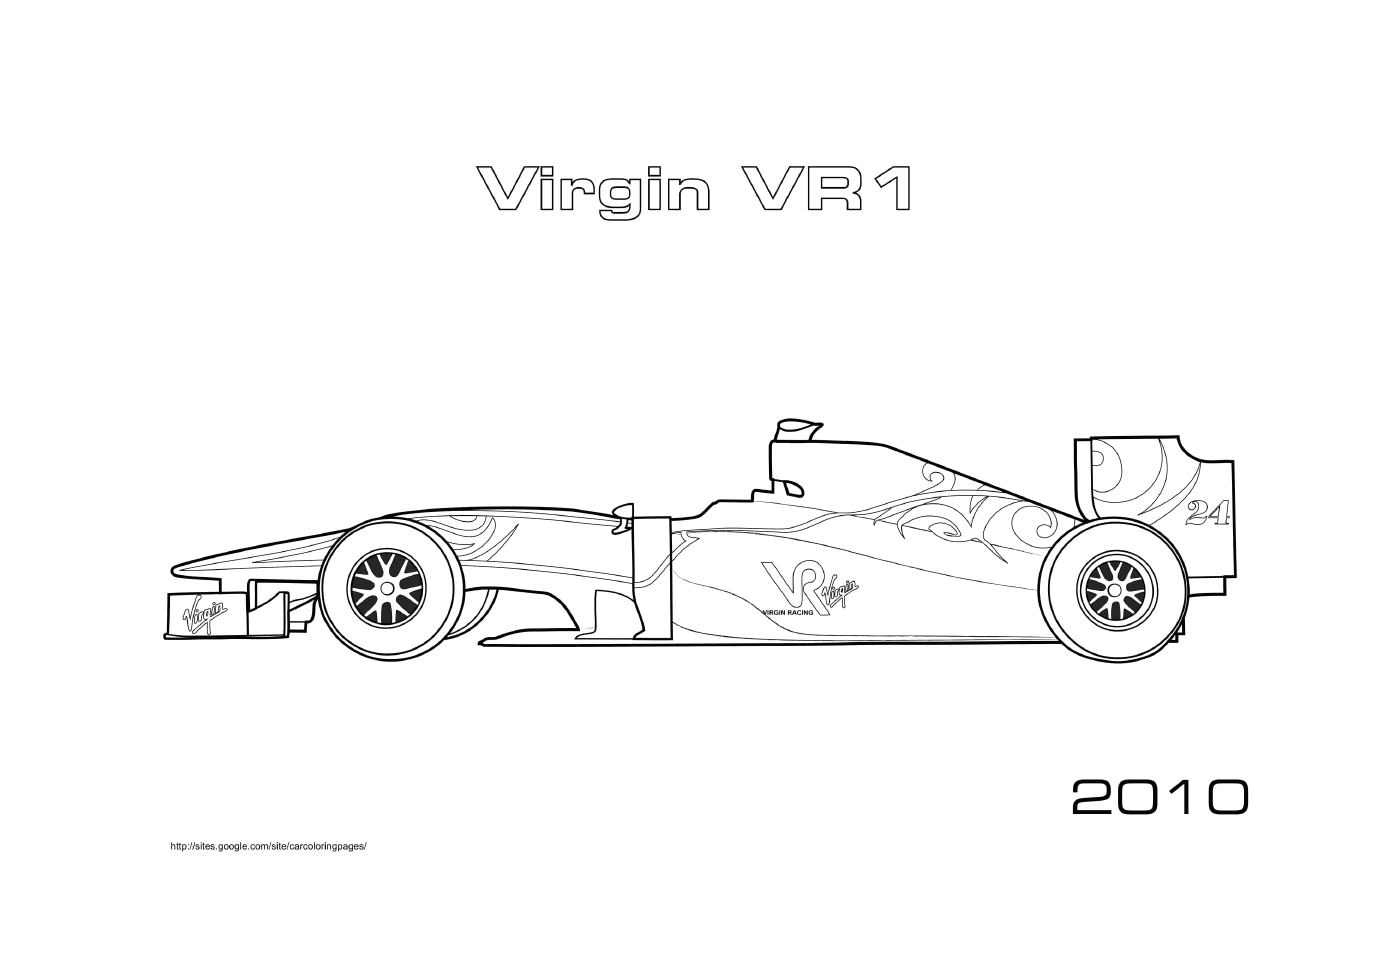  F1 Vr1 2010 